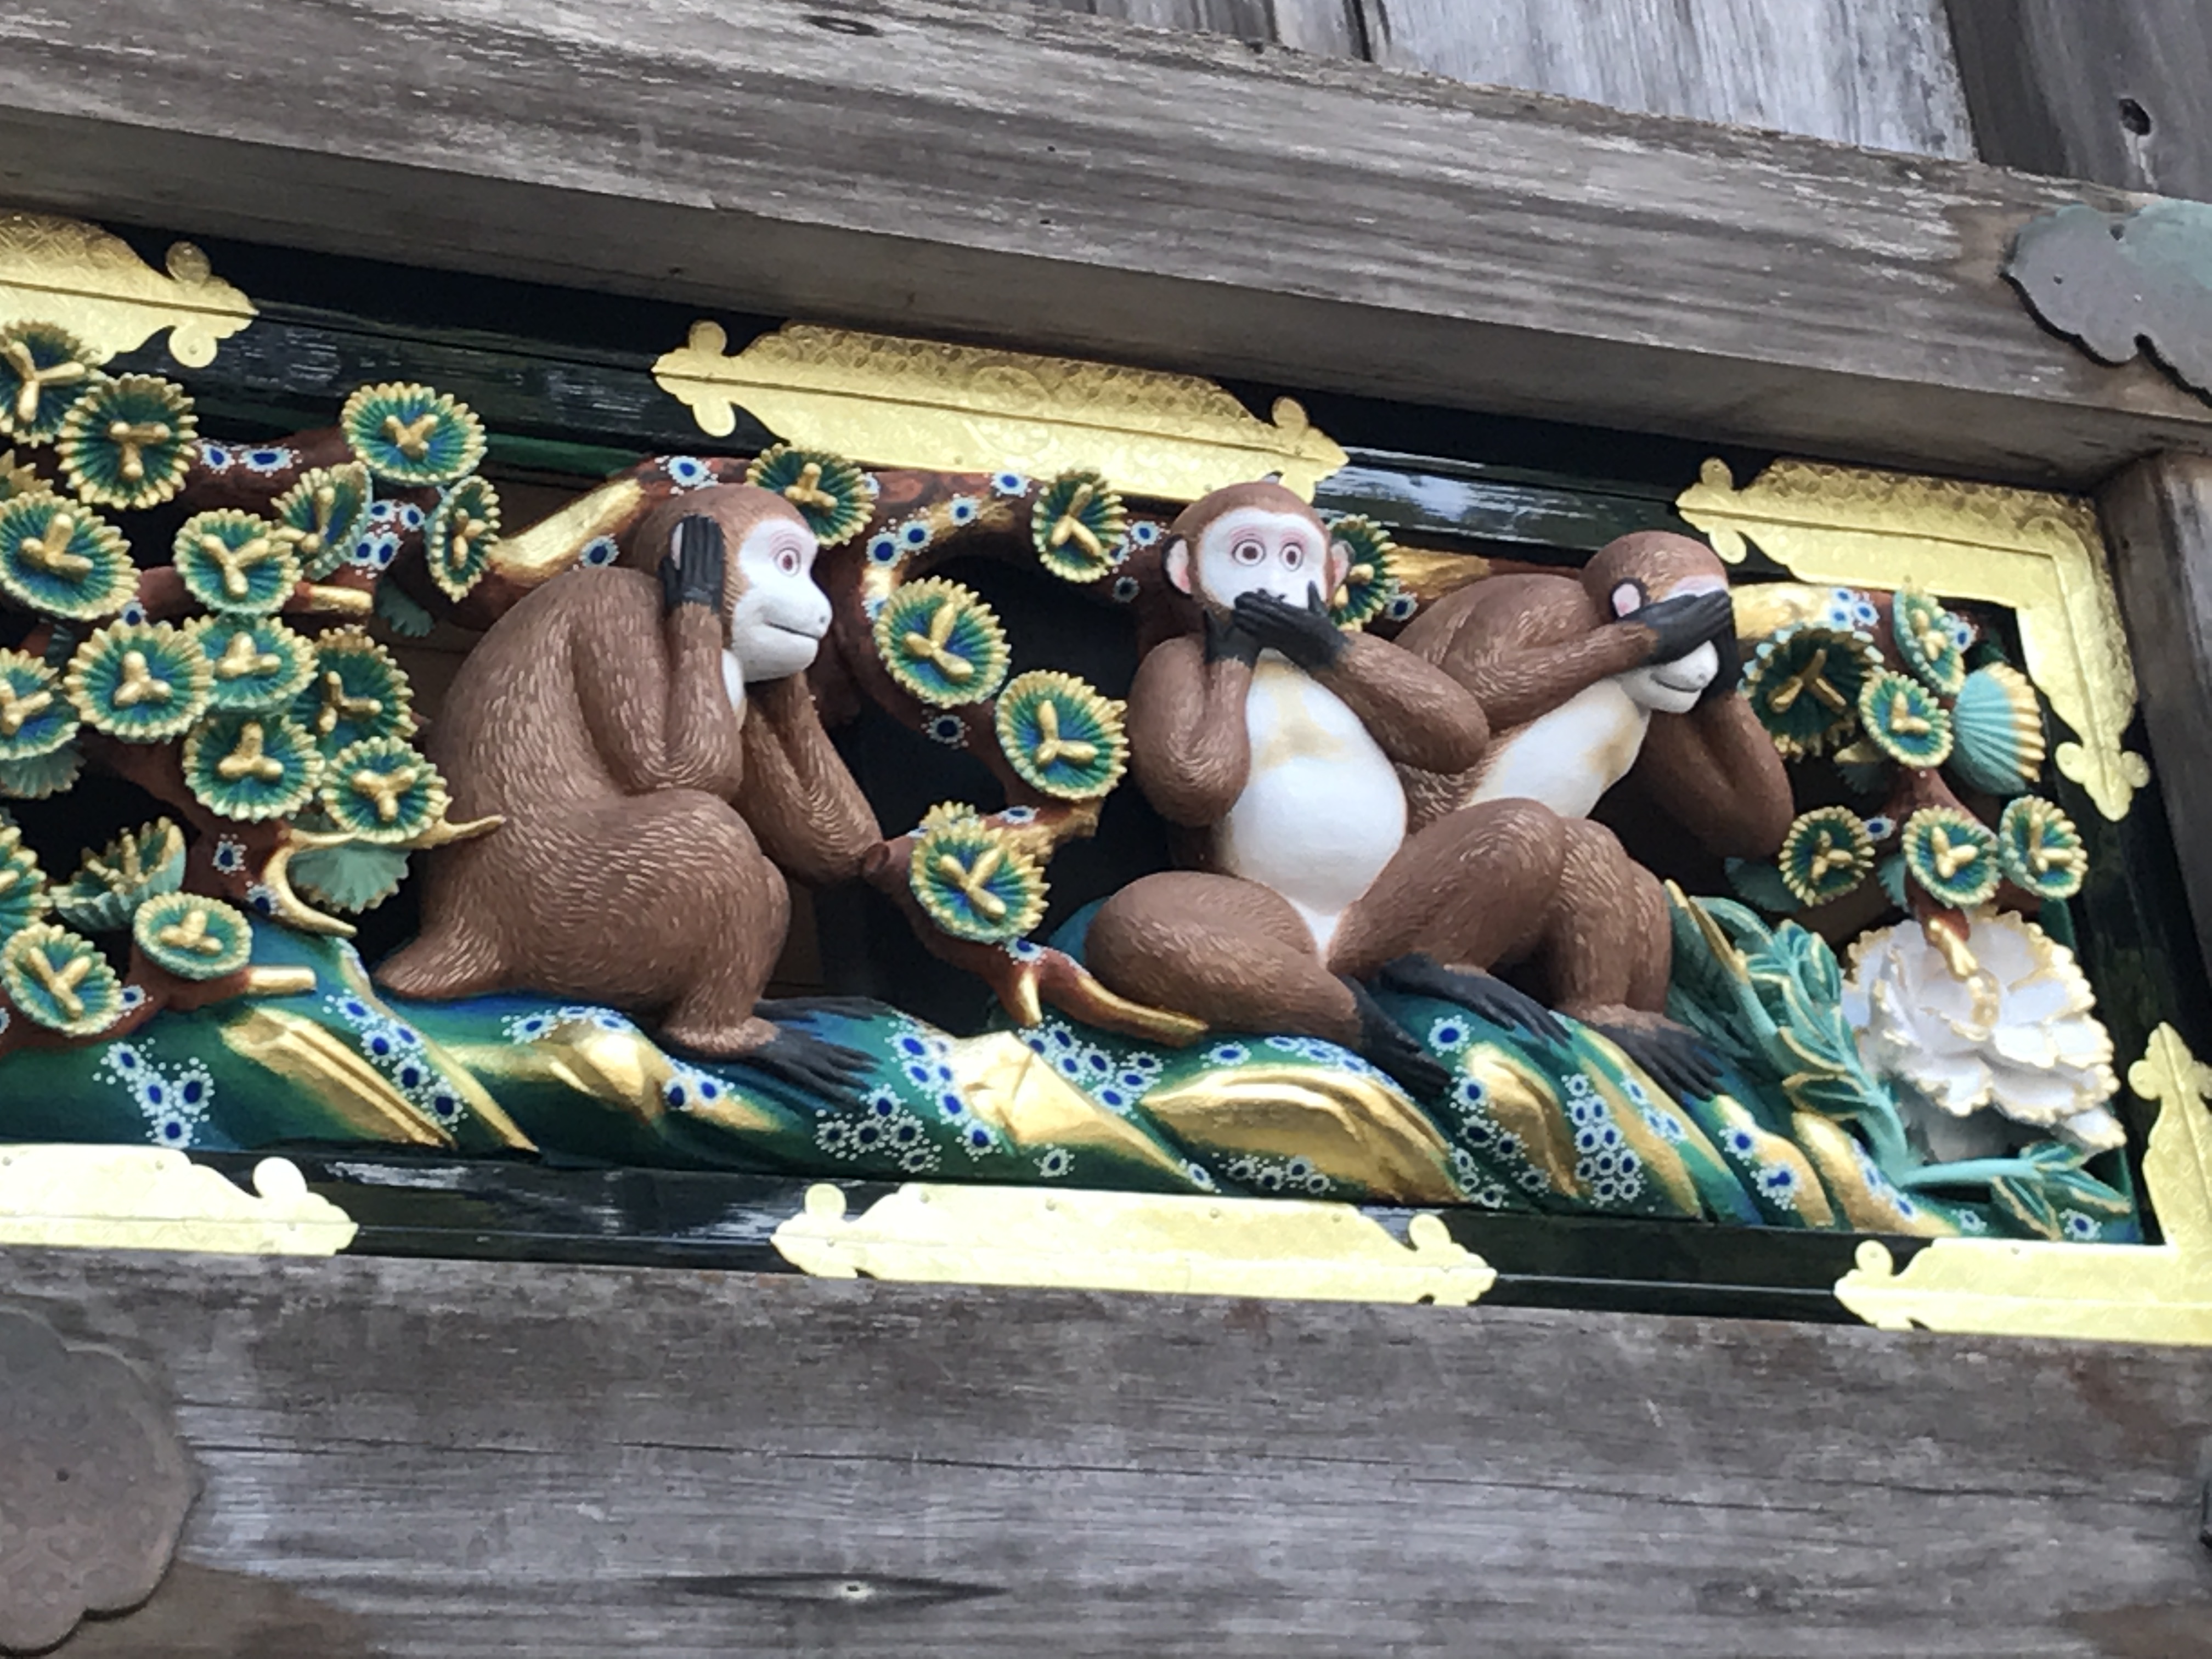 日光東照宮の三猿の彫刻